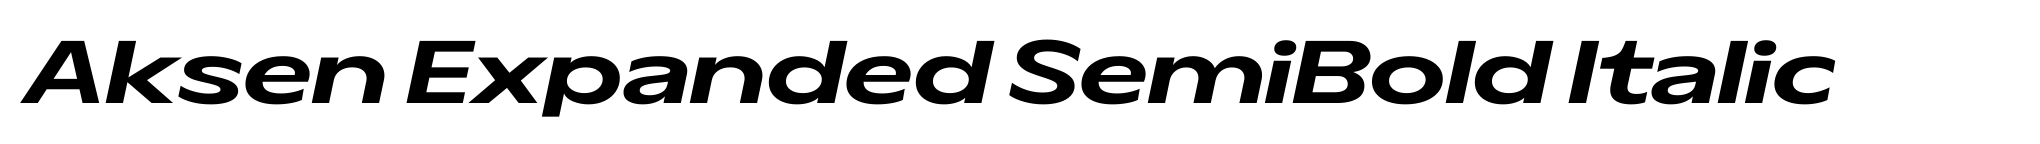 Aksen Expanded SemiBold Italic image